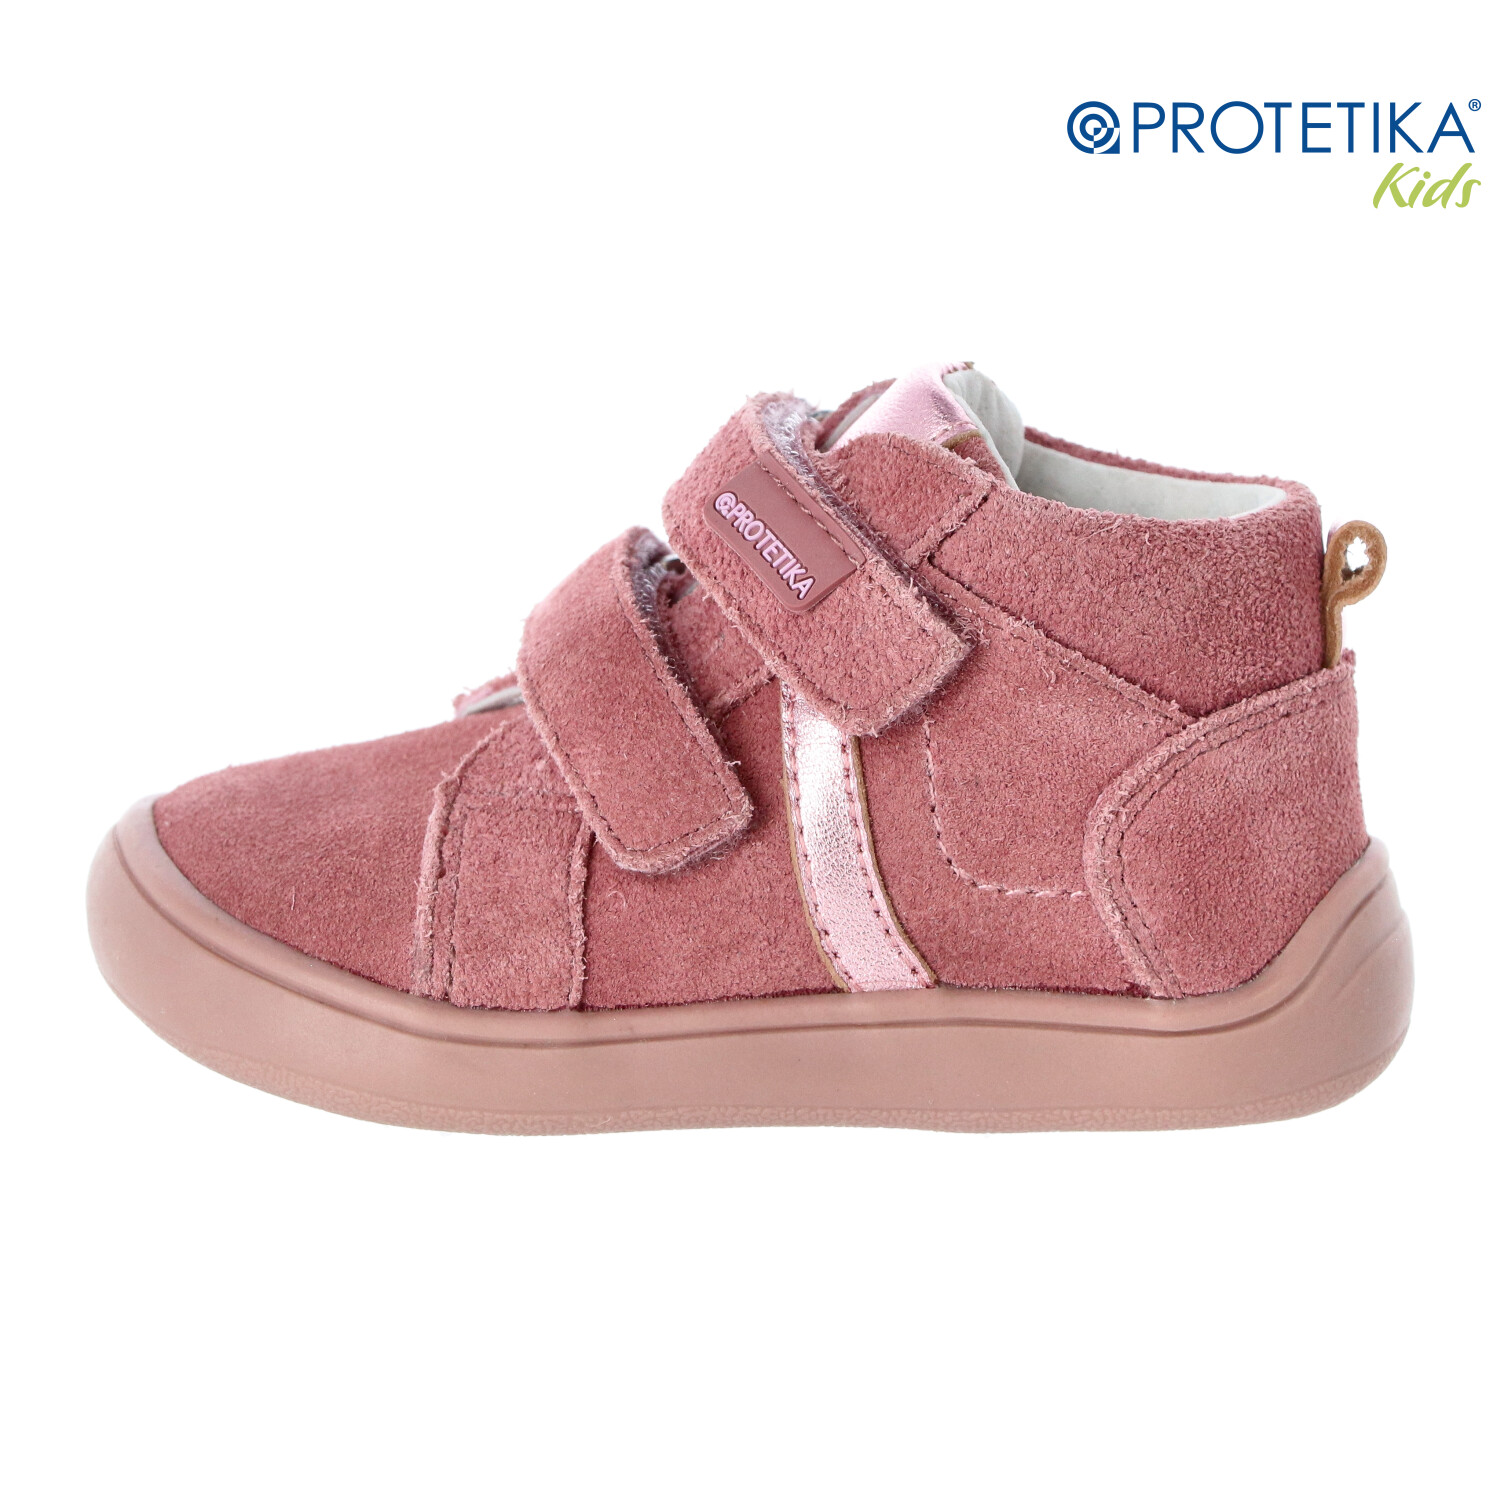 Protetika - barefootové topánky DARTA old pink